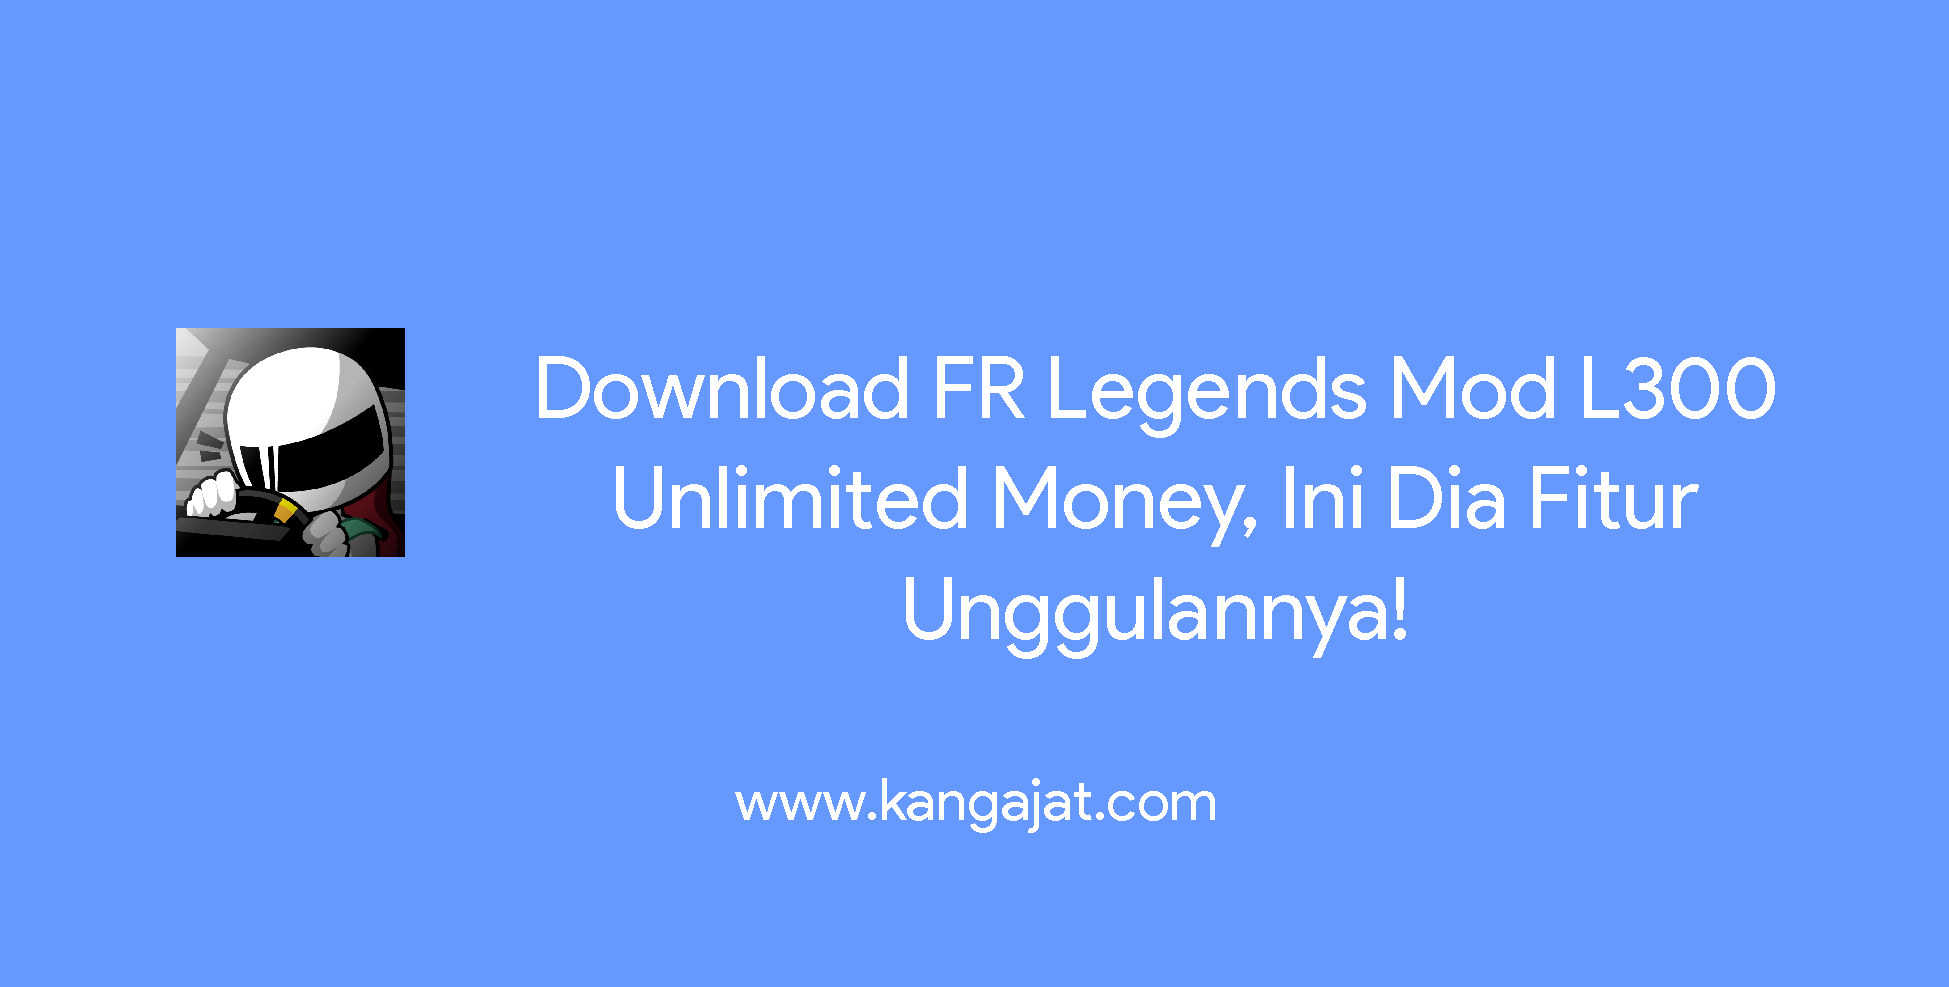 Mod Fr Legend L300. Download FR Legends Mod L300 Unlimited Money, Simak Fitur